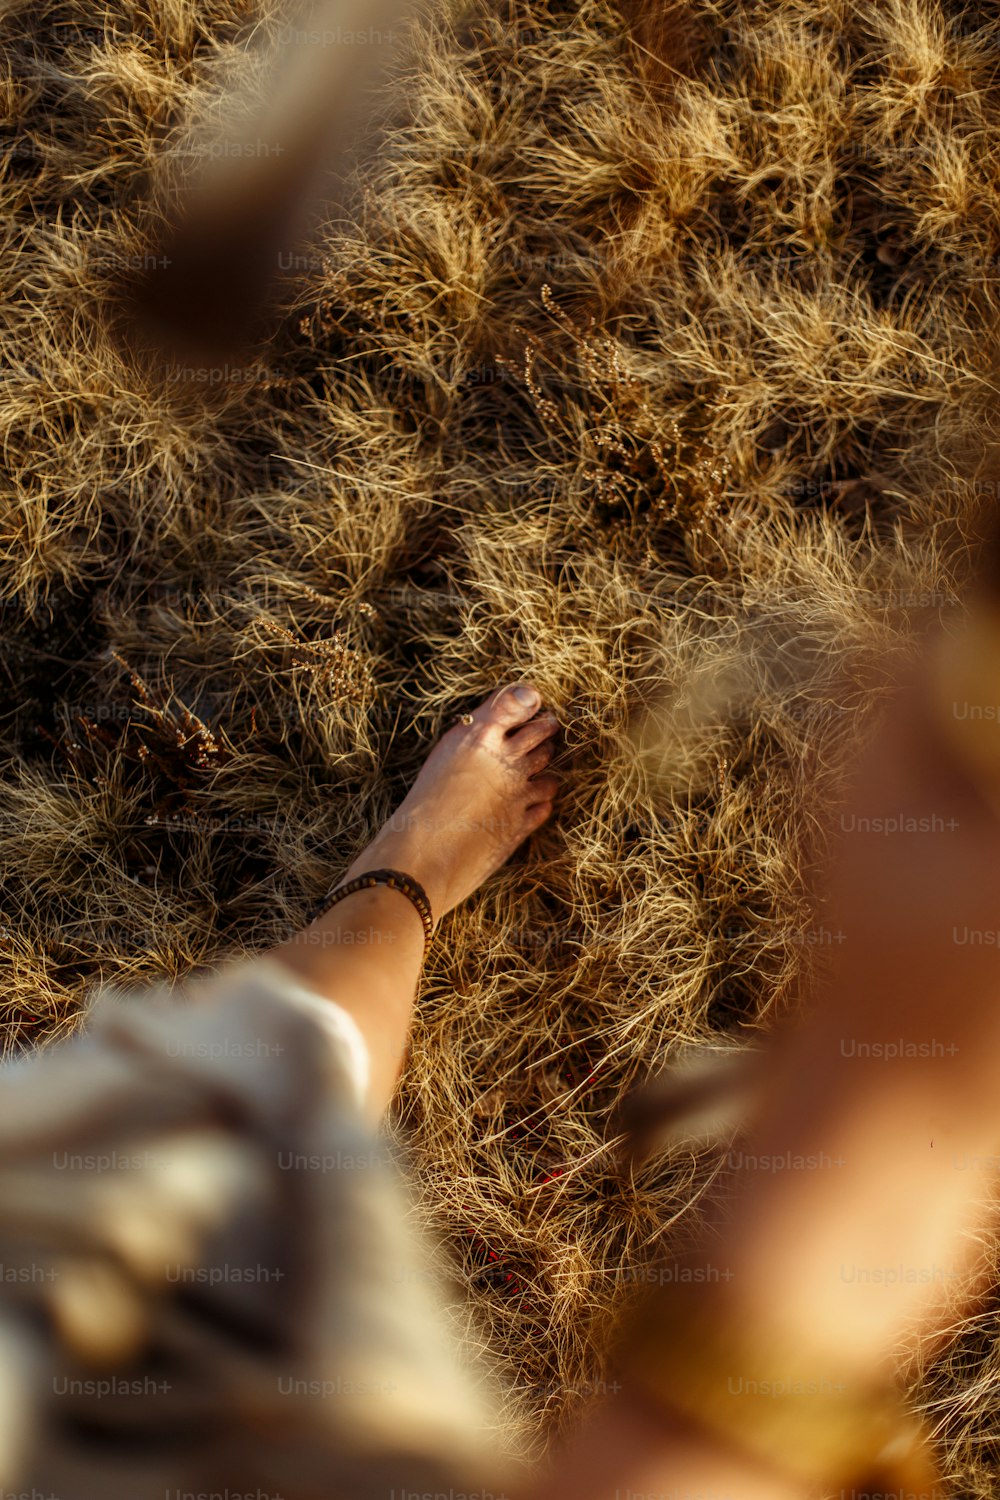 piernas de mujer en vestido boho nativo indio americano caminando en montañas ventosas soleadas de la tarde, sosteniendo plumas